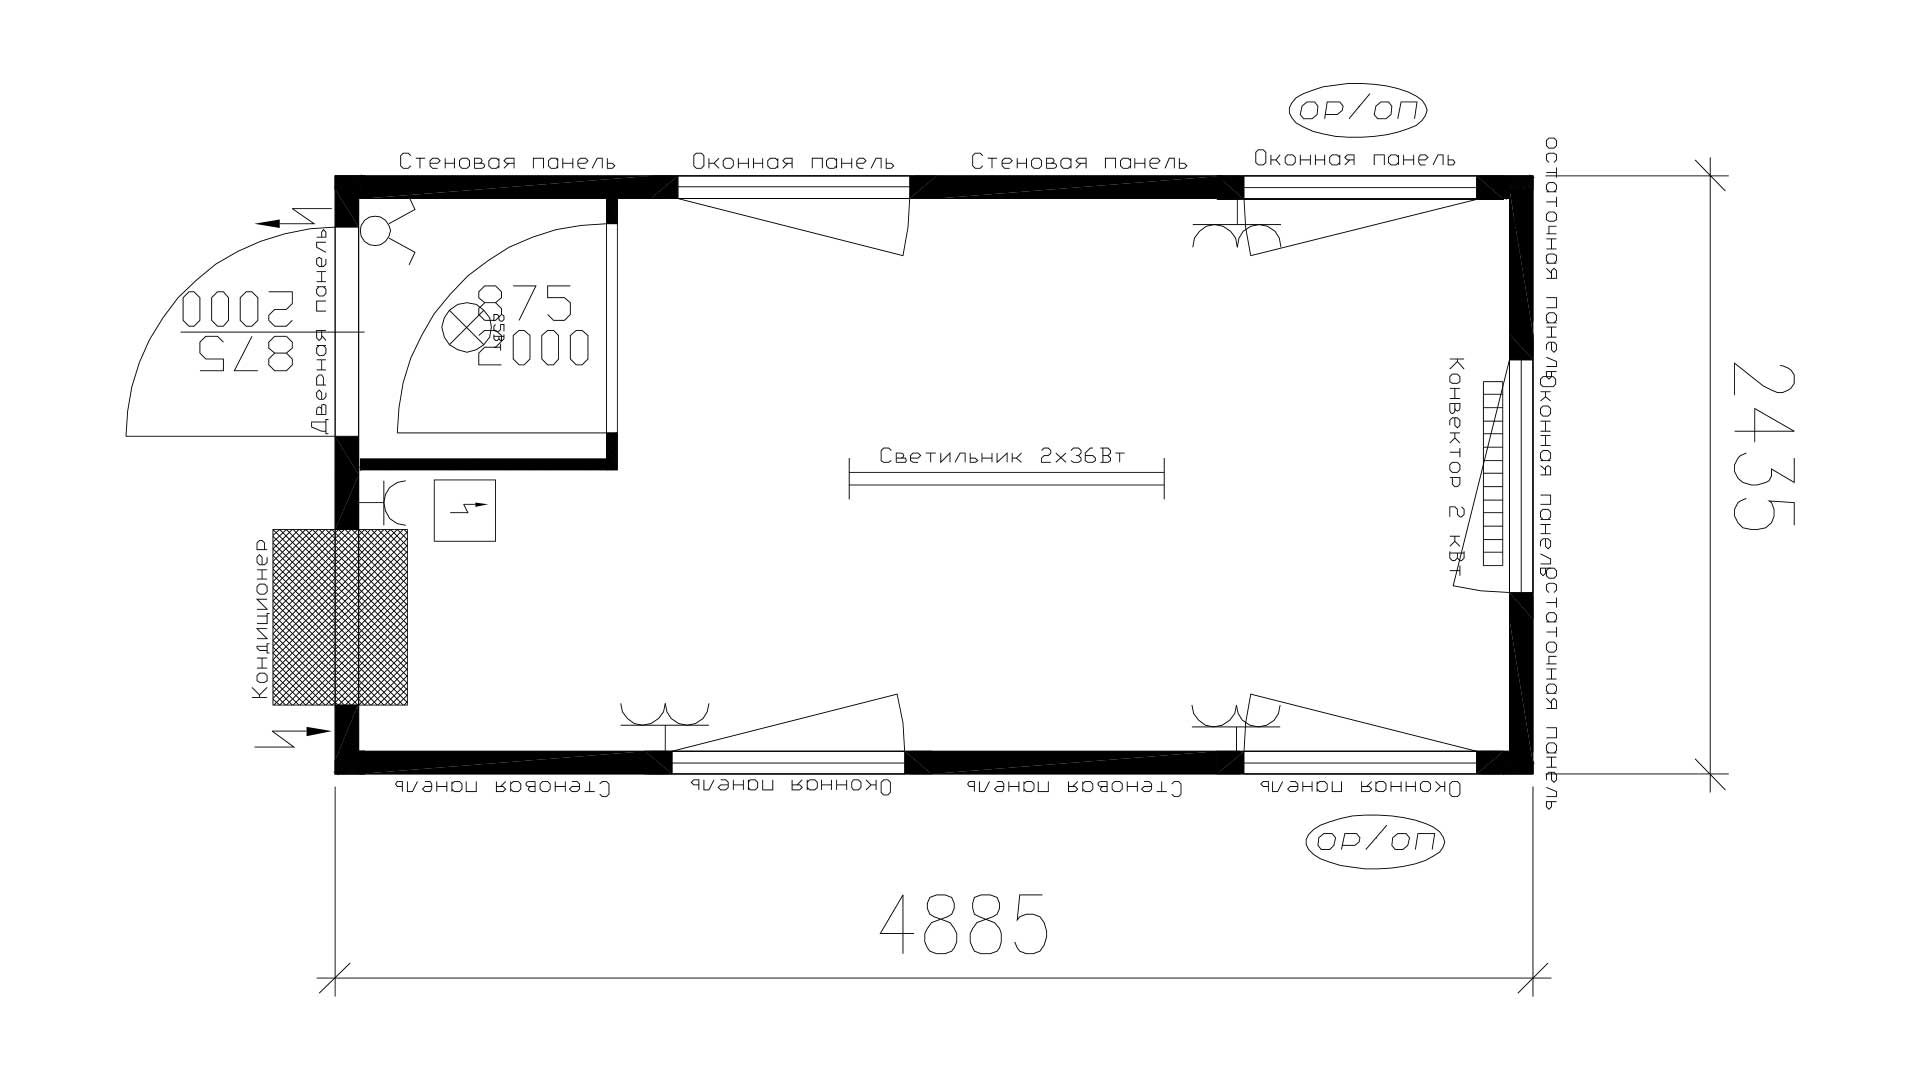 Планировка КПП с тамбуром (2 двери, 5 окон, 1 кондиционер) 16-футов, размеры: 2989/4885/2591 (Д/Ш/В) мм - 1 этаж